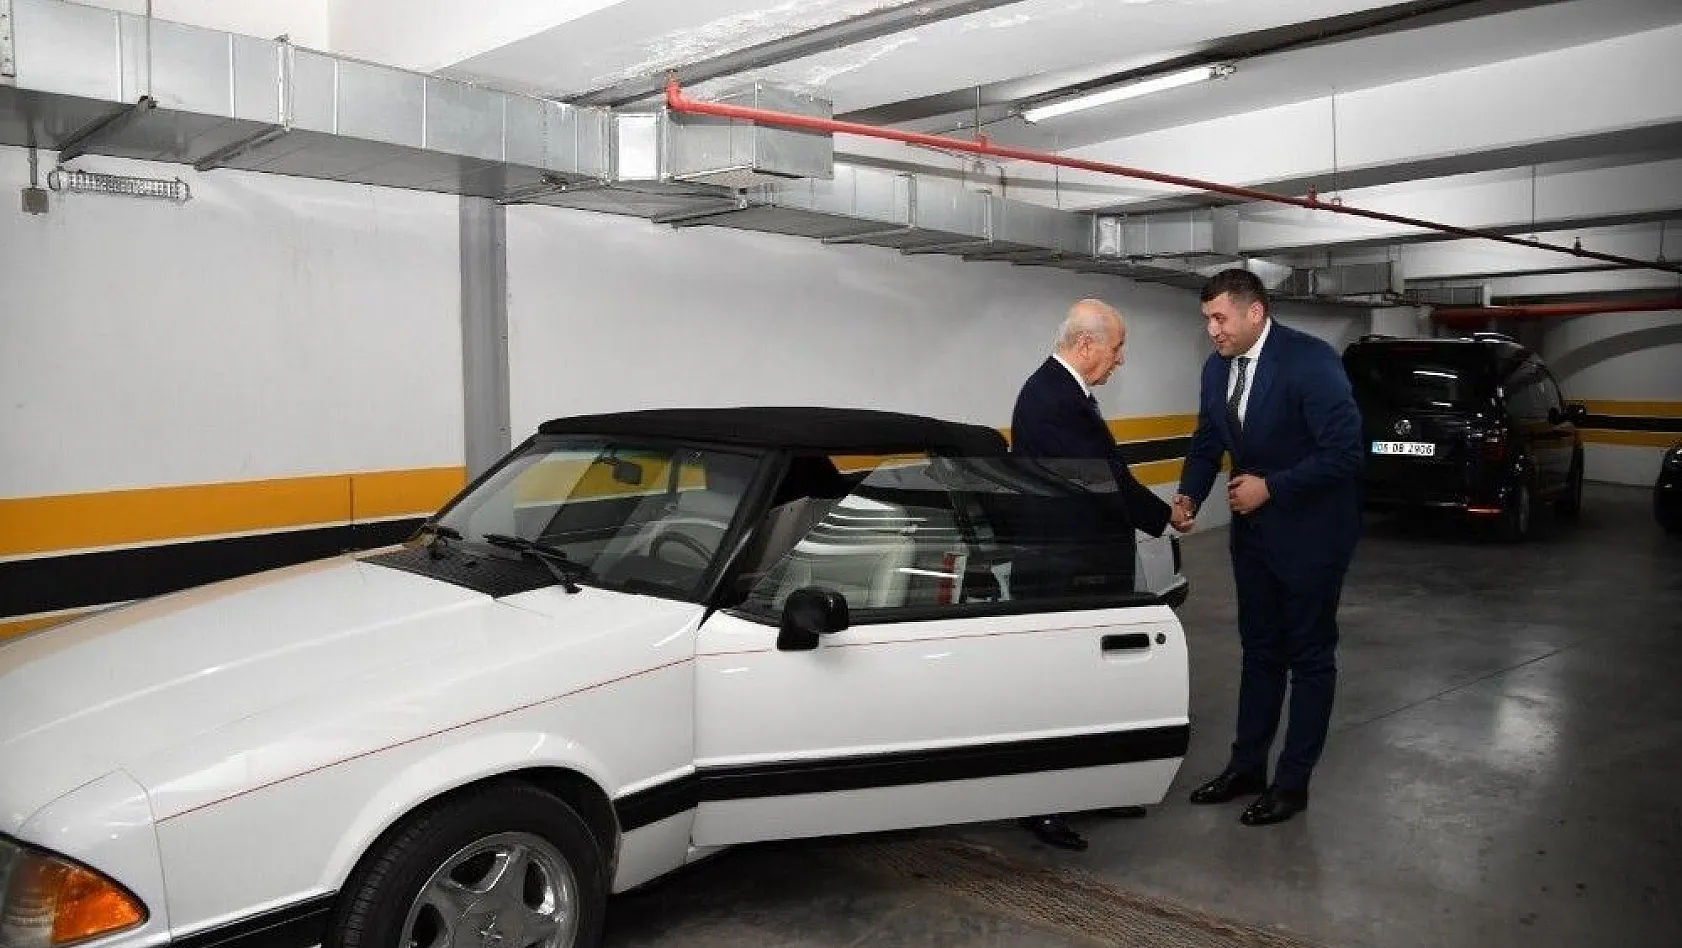 Bahçeli, Mustang marka aracını Kayseri Milletvekili Ersoy'a hediye etti
